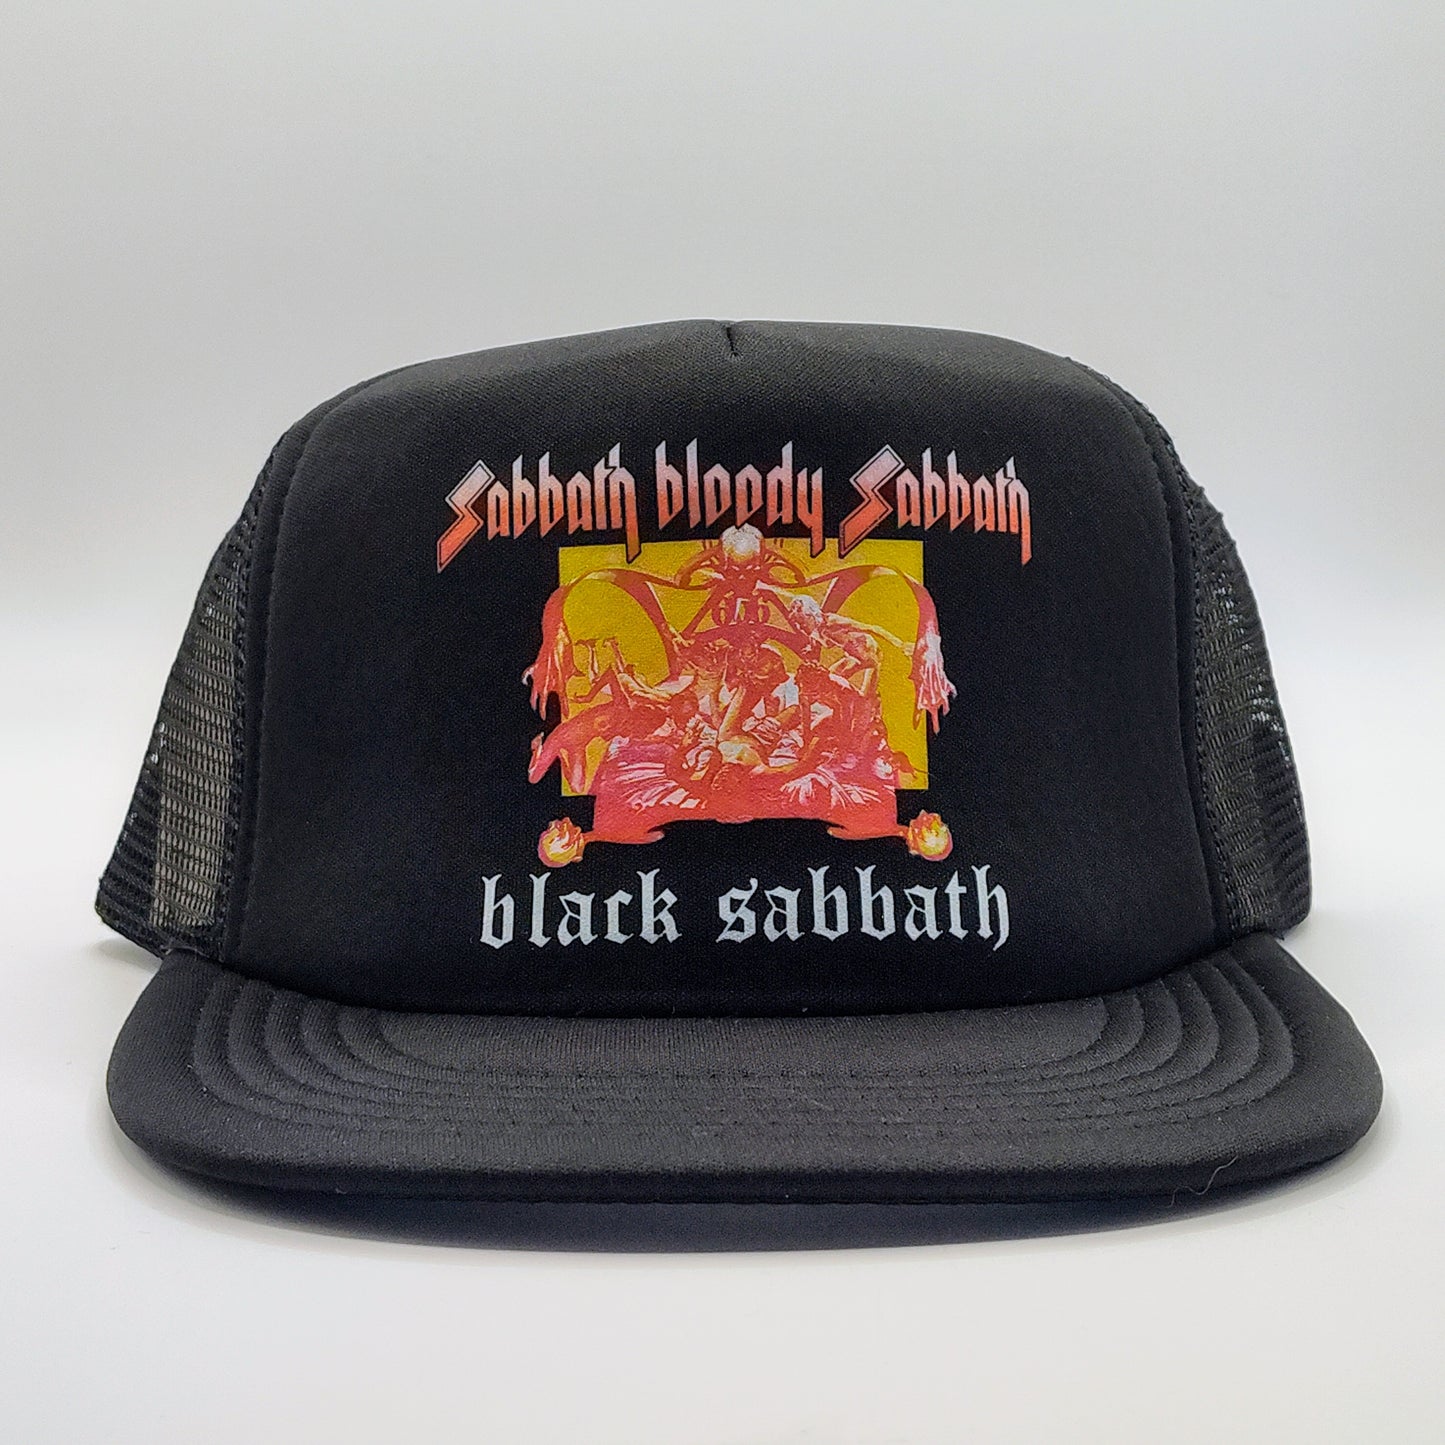 Black Sabbath - Sabbath Bloody Sabbath Trucker Hat